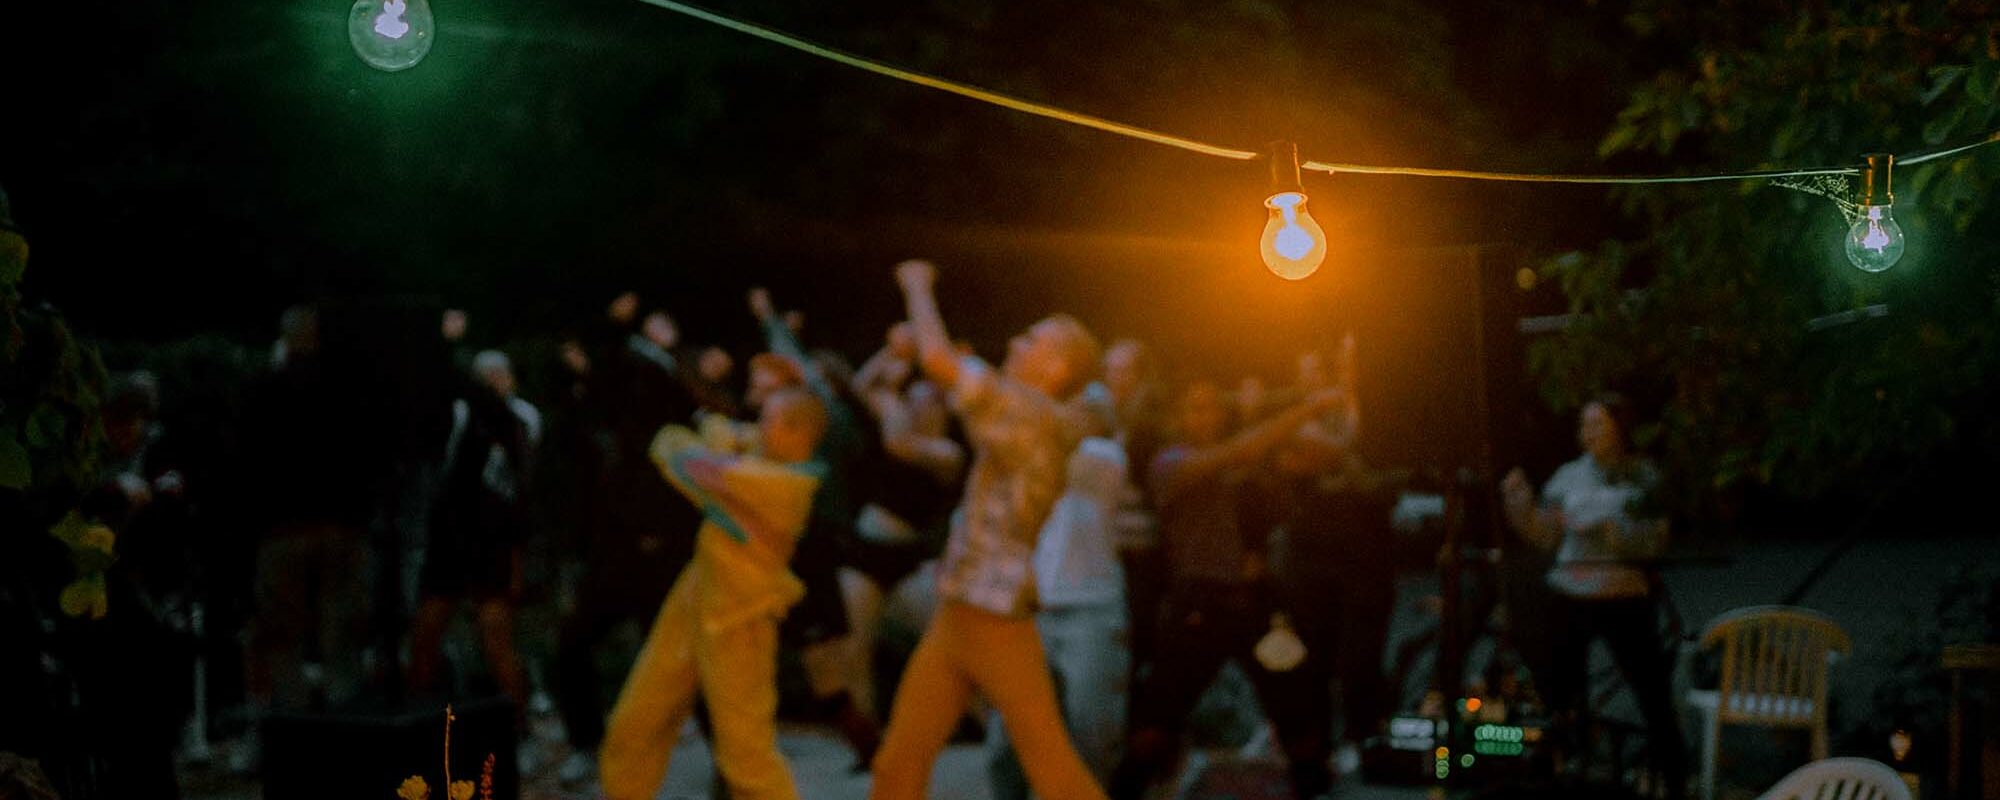 Lichterkette im Vordergrund und Menschen tanzen